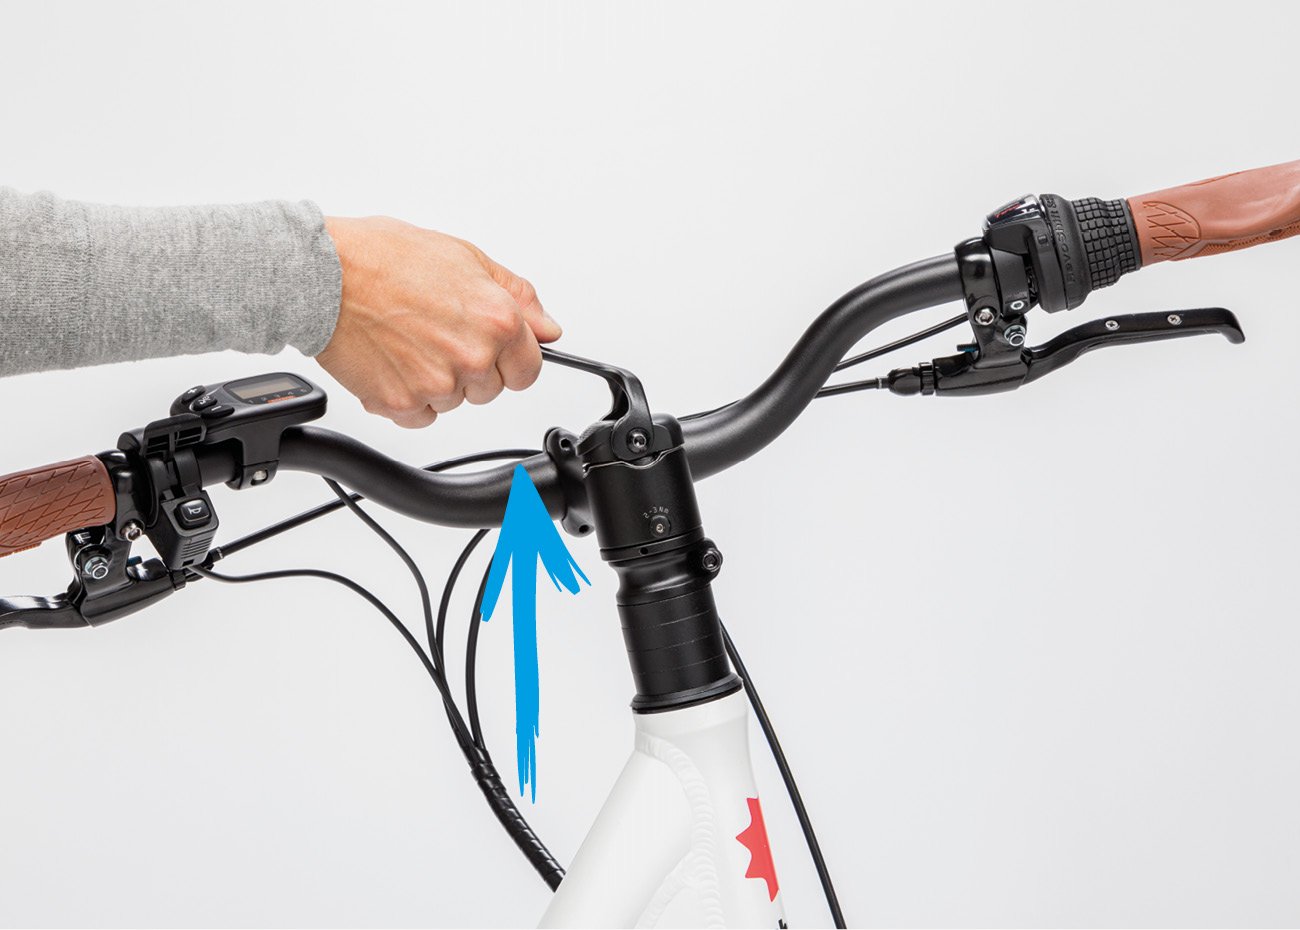 Instructions for adjustable e-bike stem